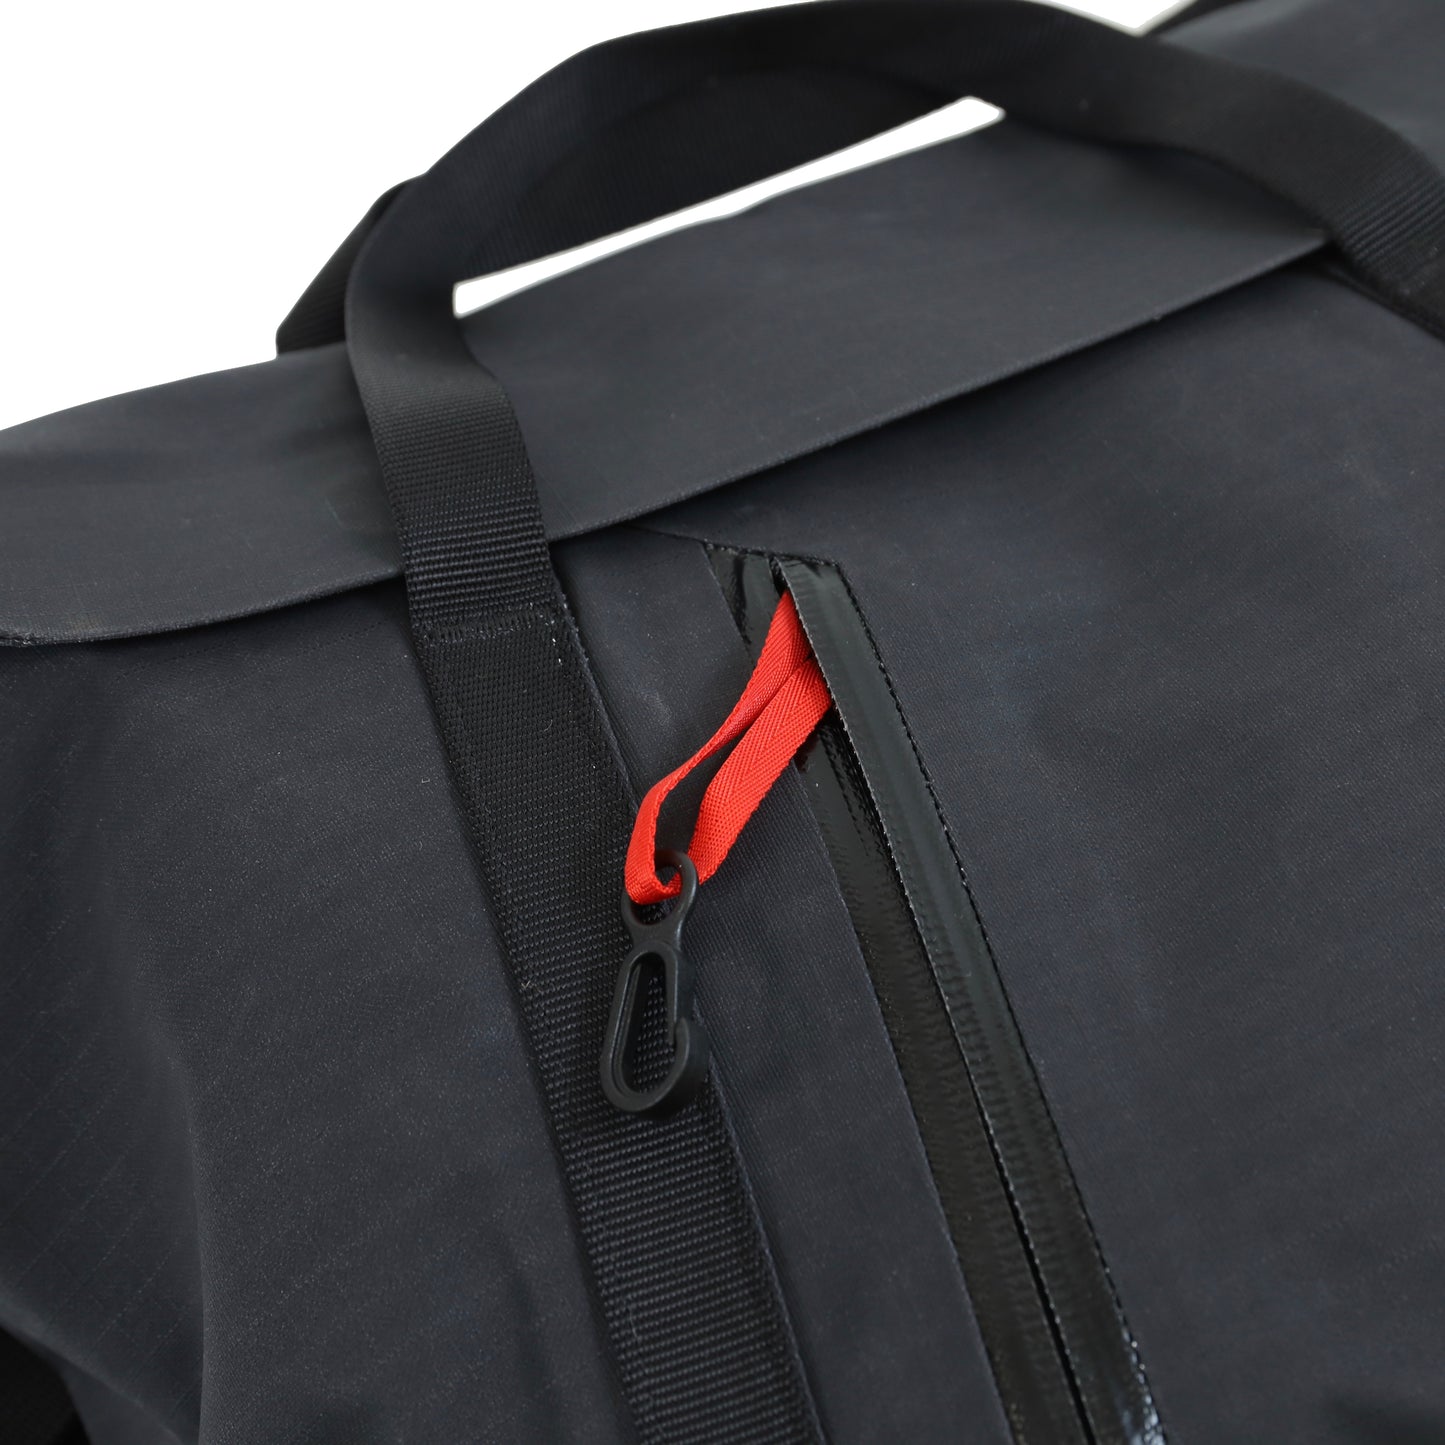 【Arc'teryx】Granville Shoulder Bag